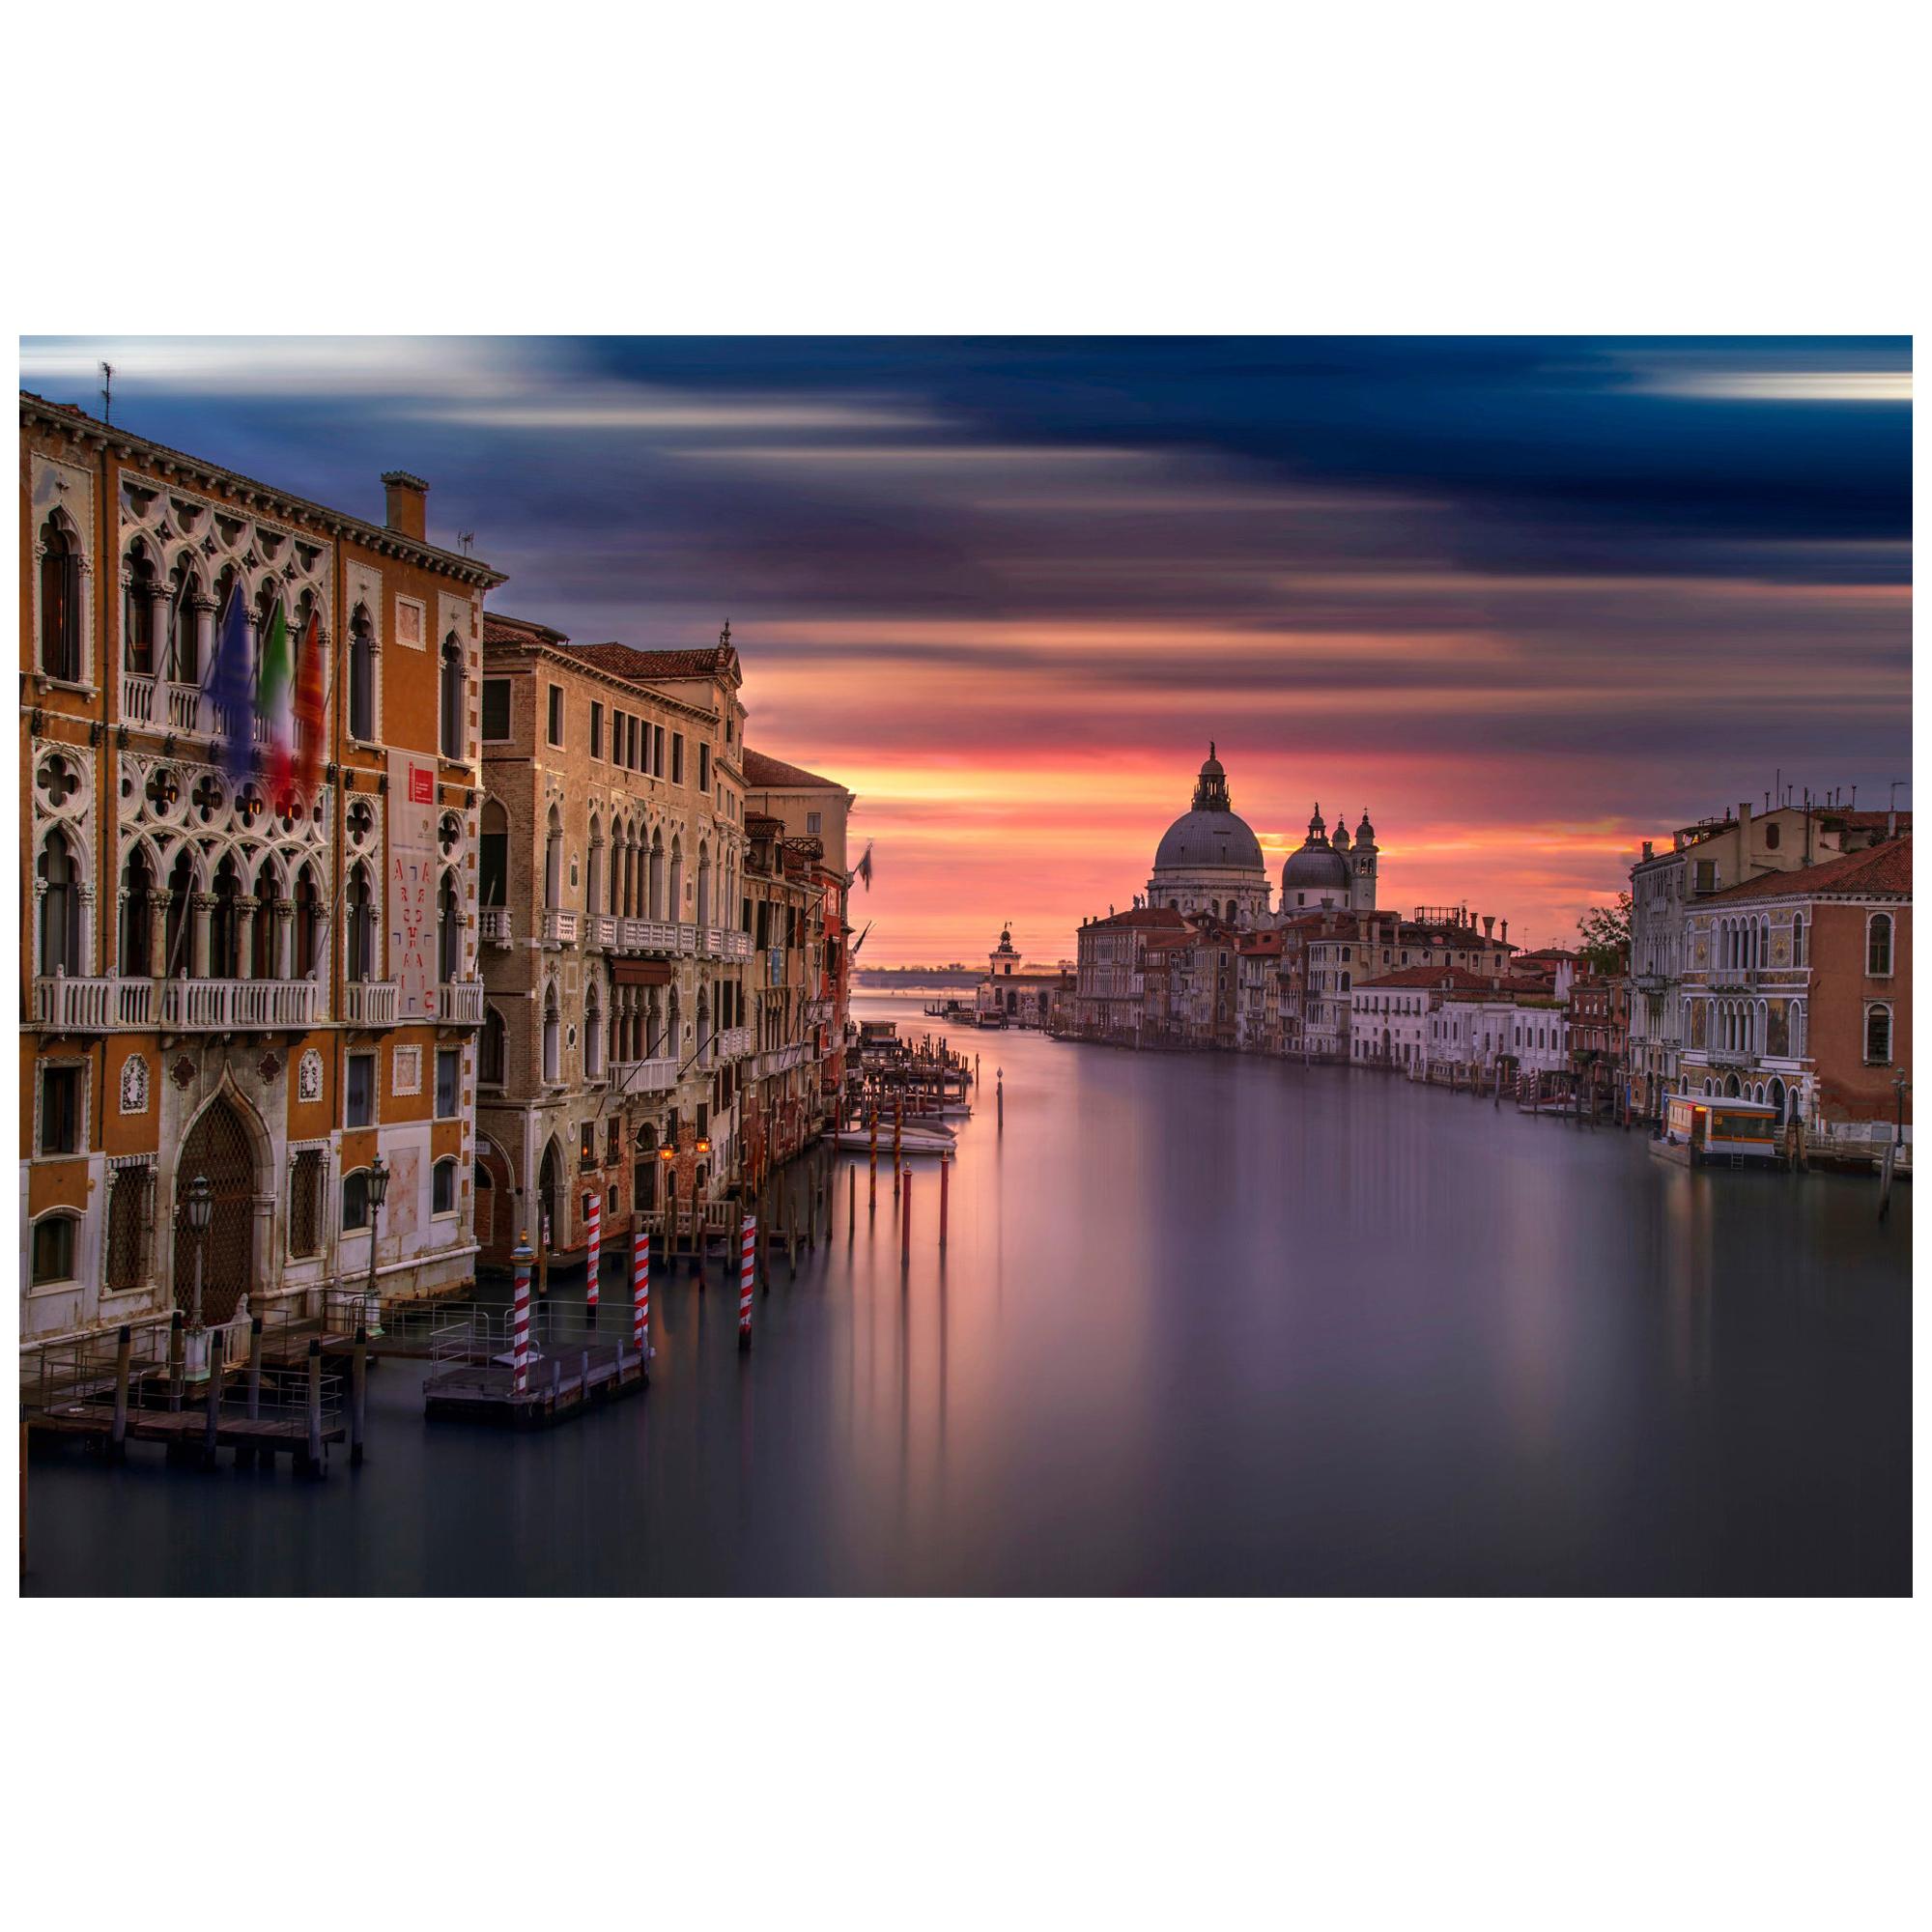 Photographie couleur du lever du soleil de Venise, impression d'art de Rainer Martini en vente